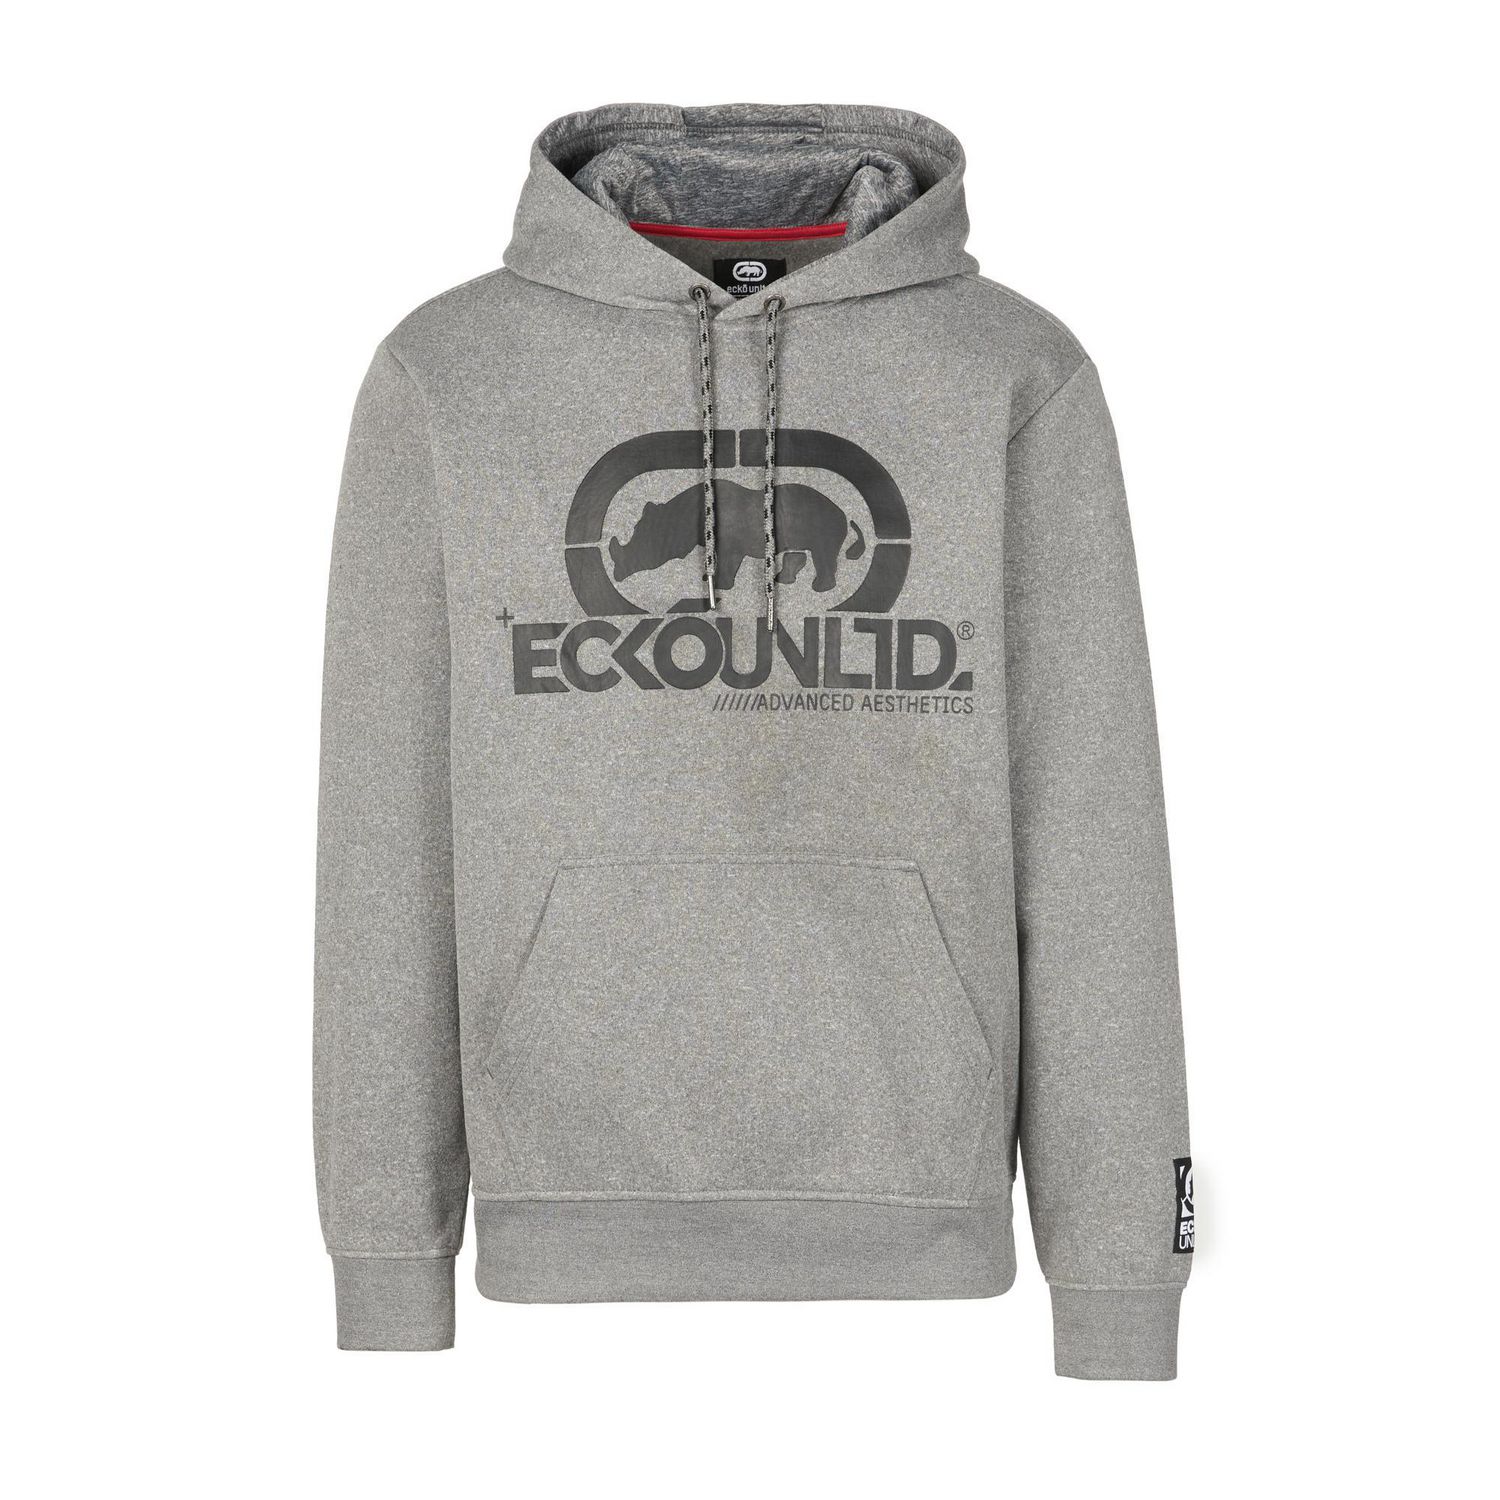 Ecko Unltd. Men’s Sweatshirt Ecko LOGO Pullover Sweater Fleece Hoodie